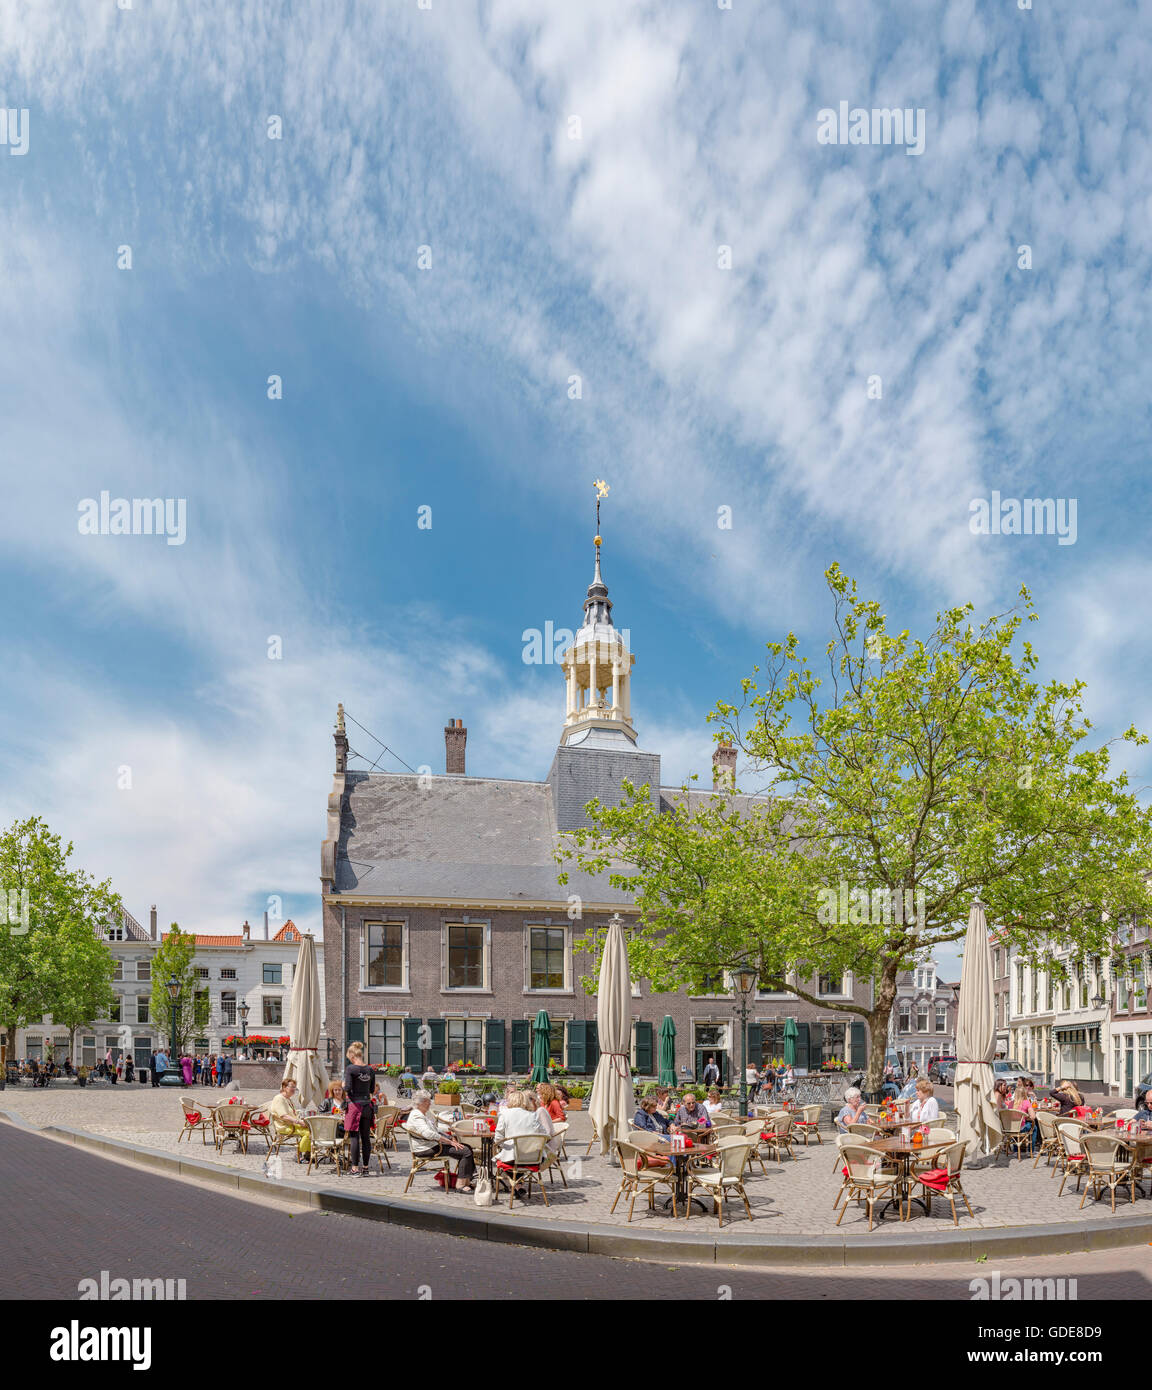 Schiedam,la plaza del mercado con el ayuntamiento y un café al aire libre Foto de stock